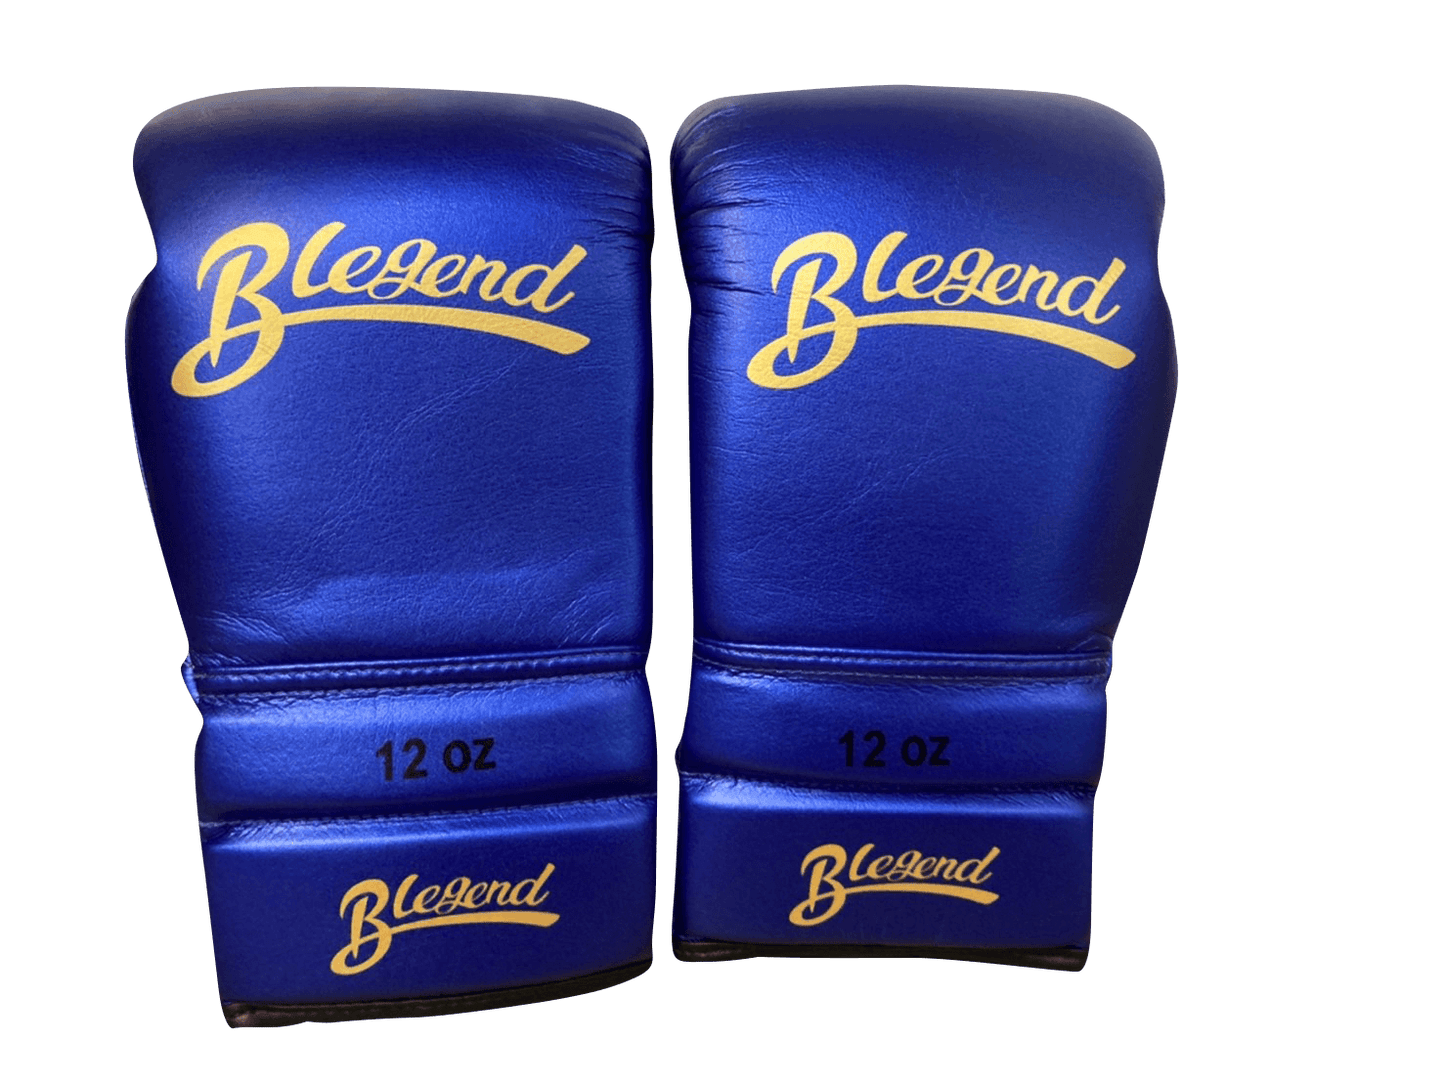 Боксерские перчатки Blegend BGLLP на шнуровке блестящие синие